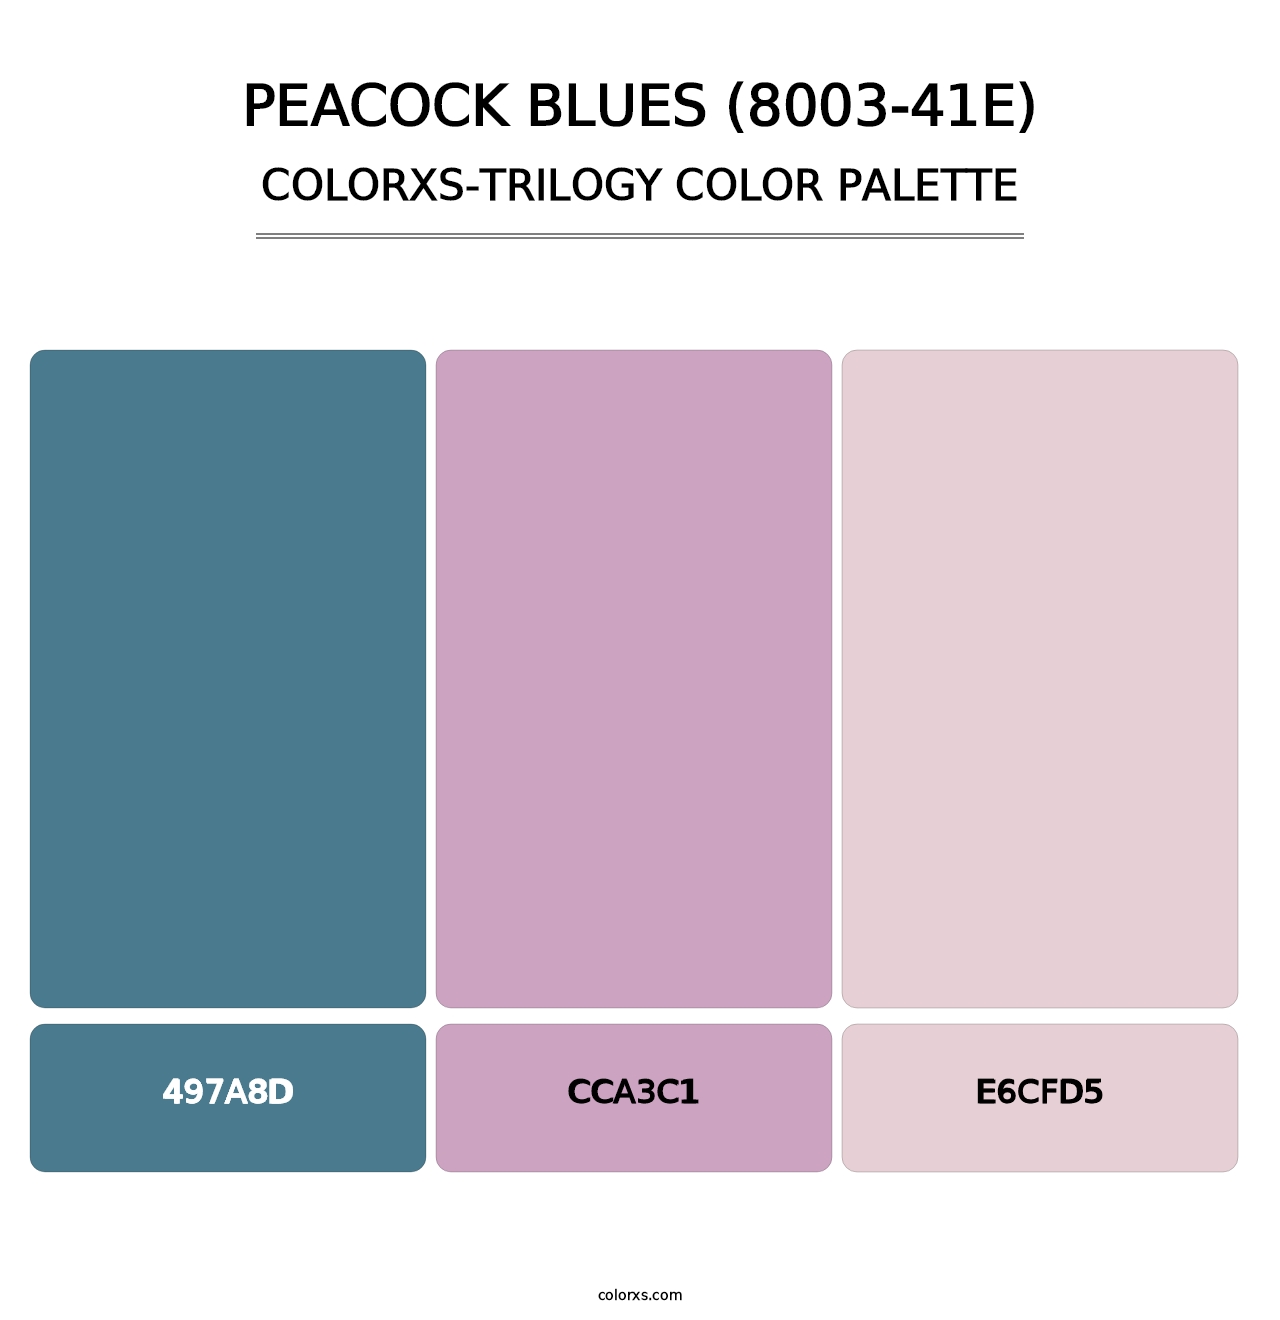 Peacock Blues (8003-41E) - Colorxs Trilogy Palette